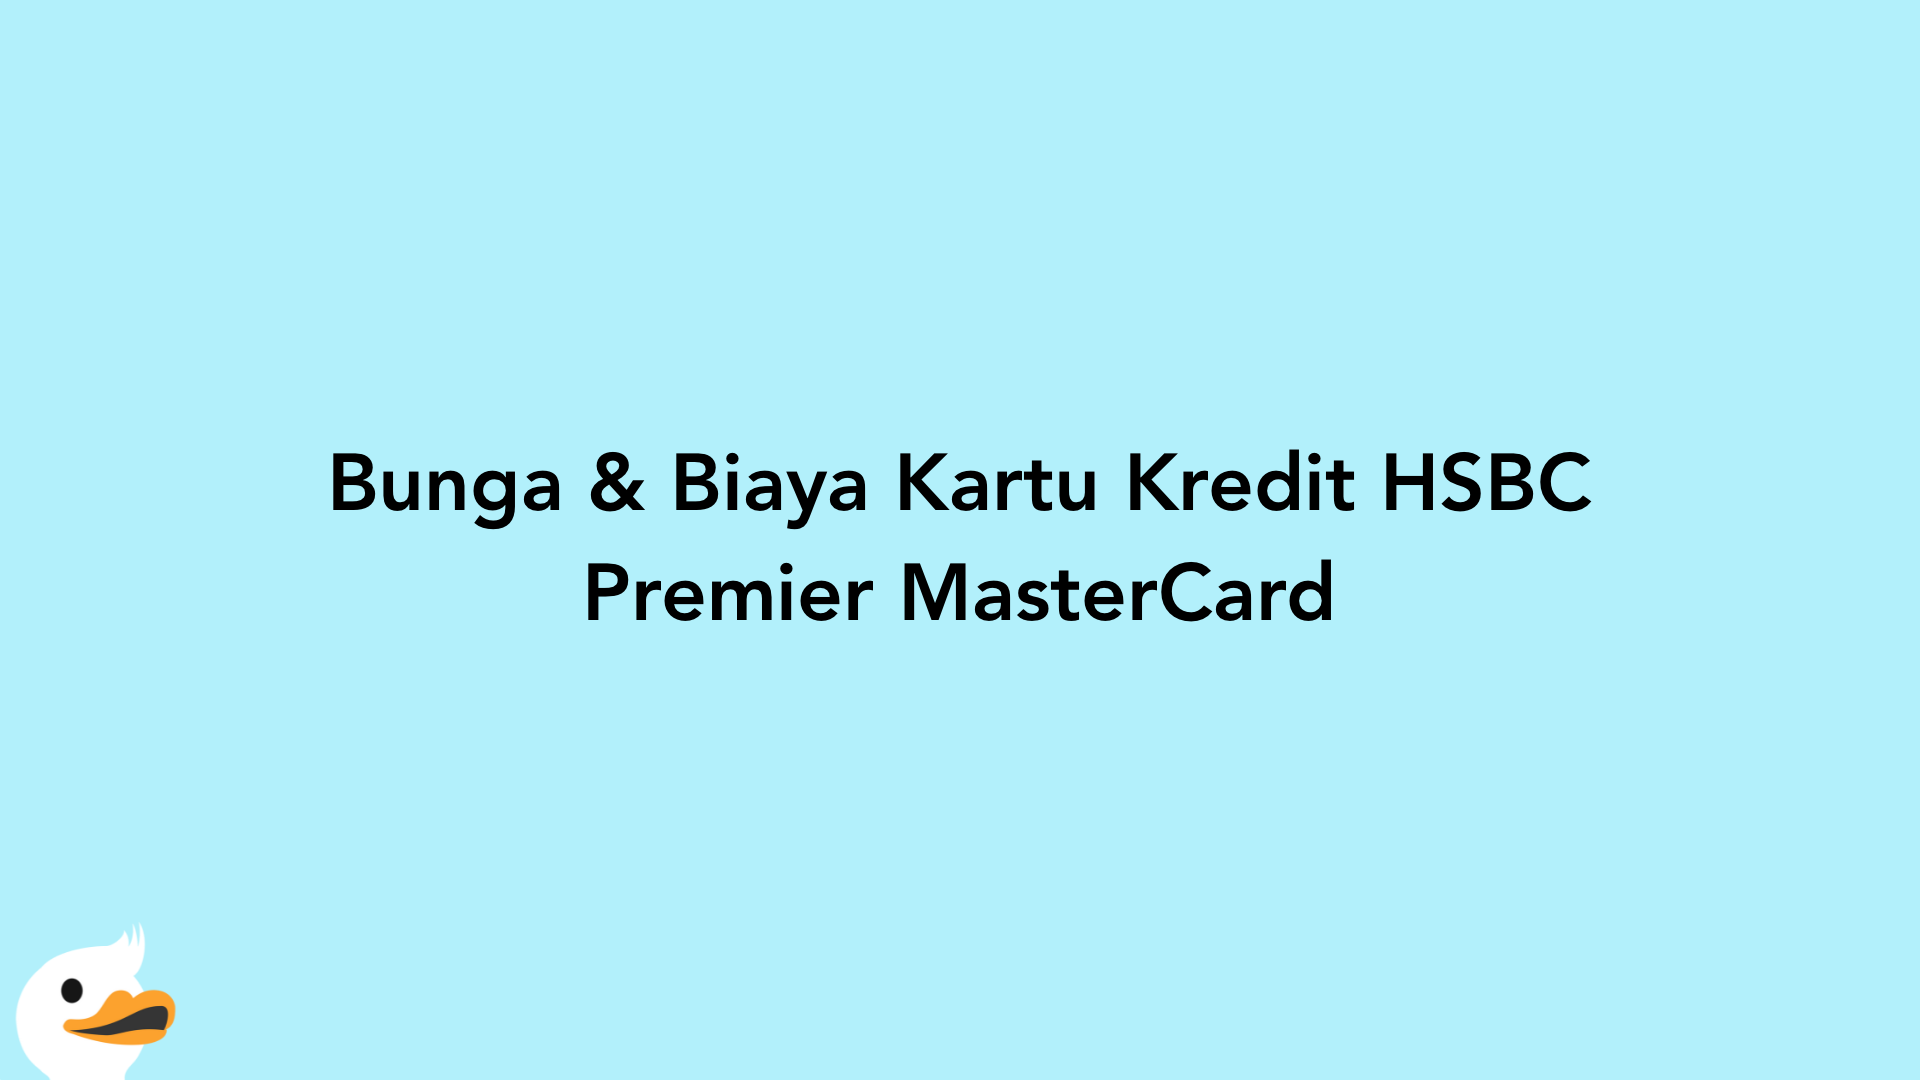 Bunga & Biaya Kartu Kredit HSBC Premier MasterCard